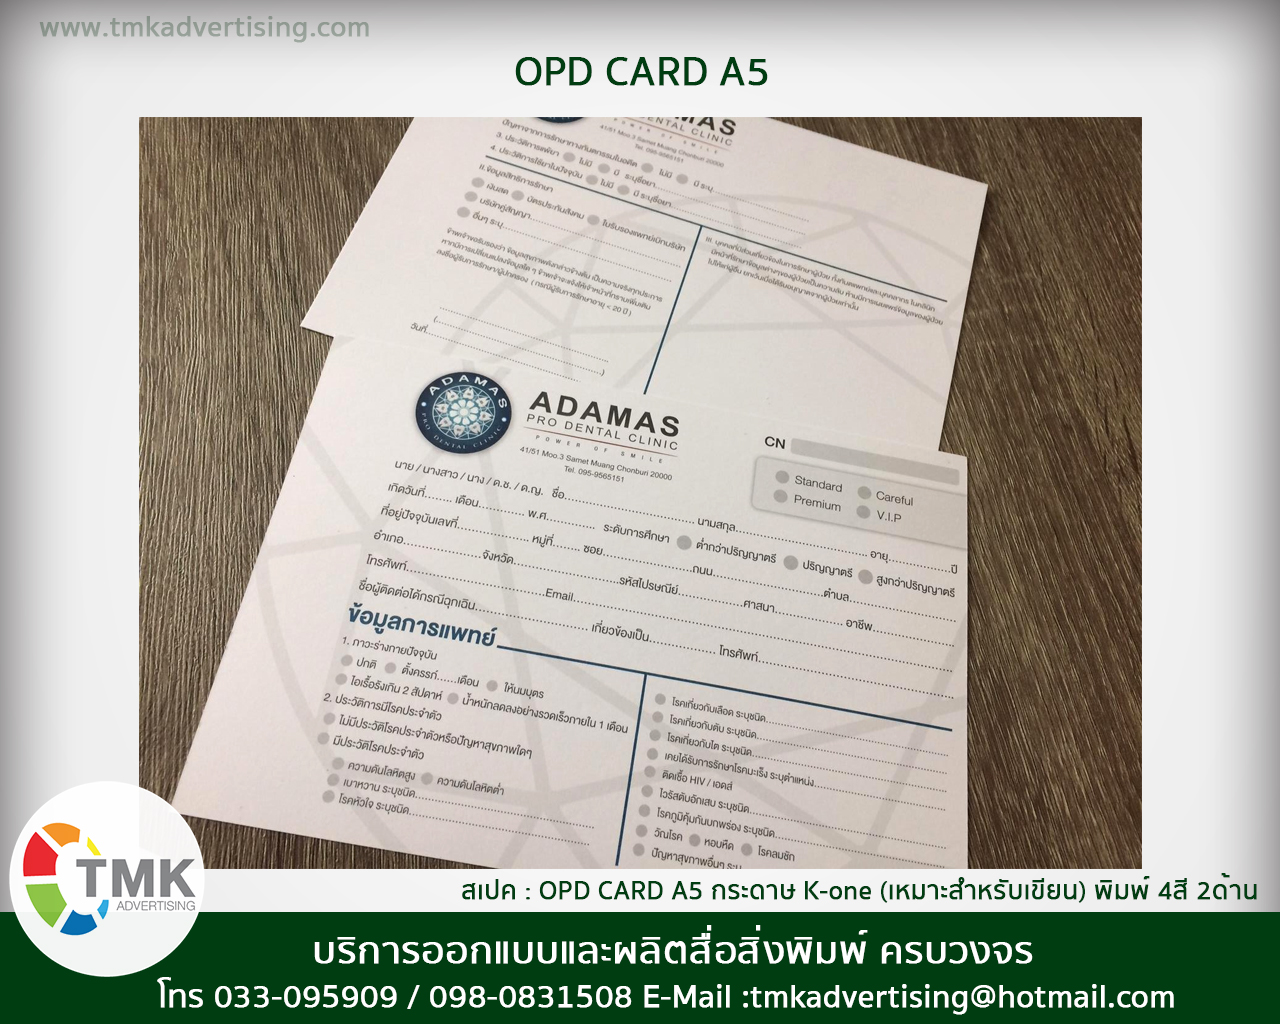 รับทำ OPD CARD ทะเบียนประวัติผู้ป่วย กระดาษสำหรับคลีนิค กระดาษบันทึกผู้ป่วย